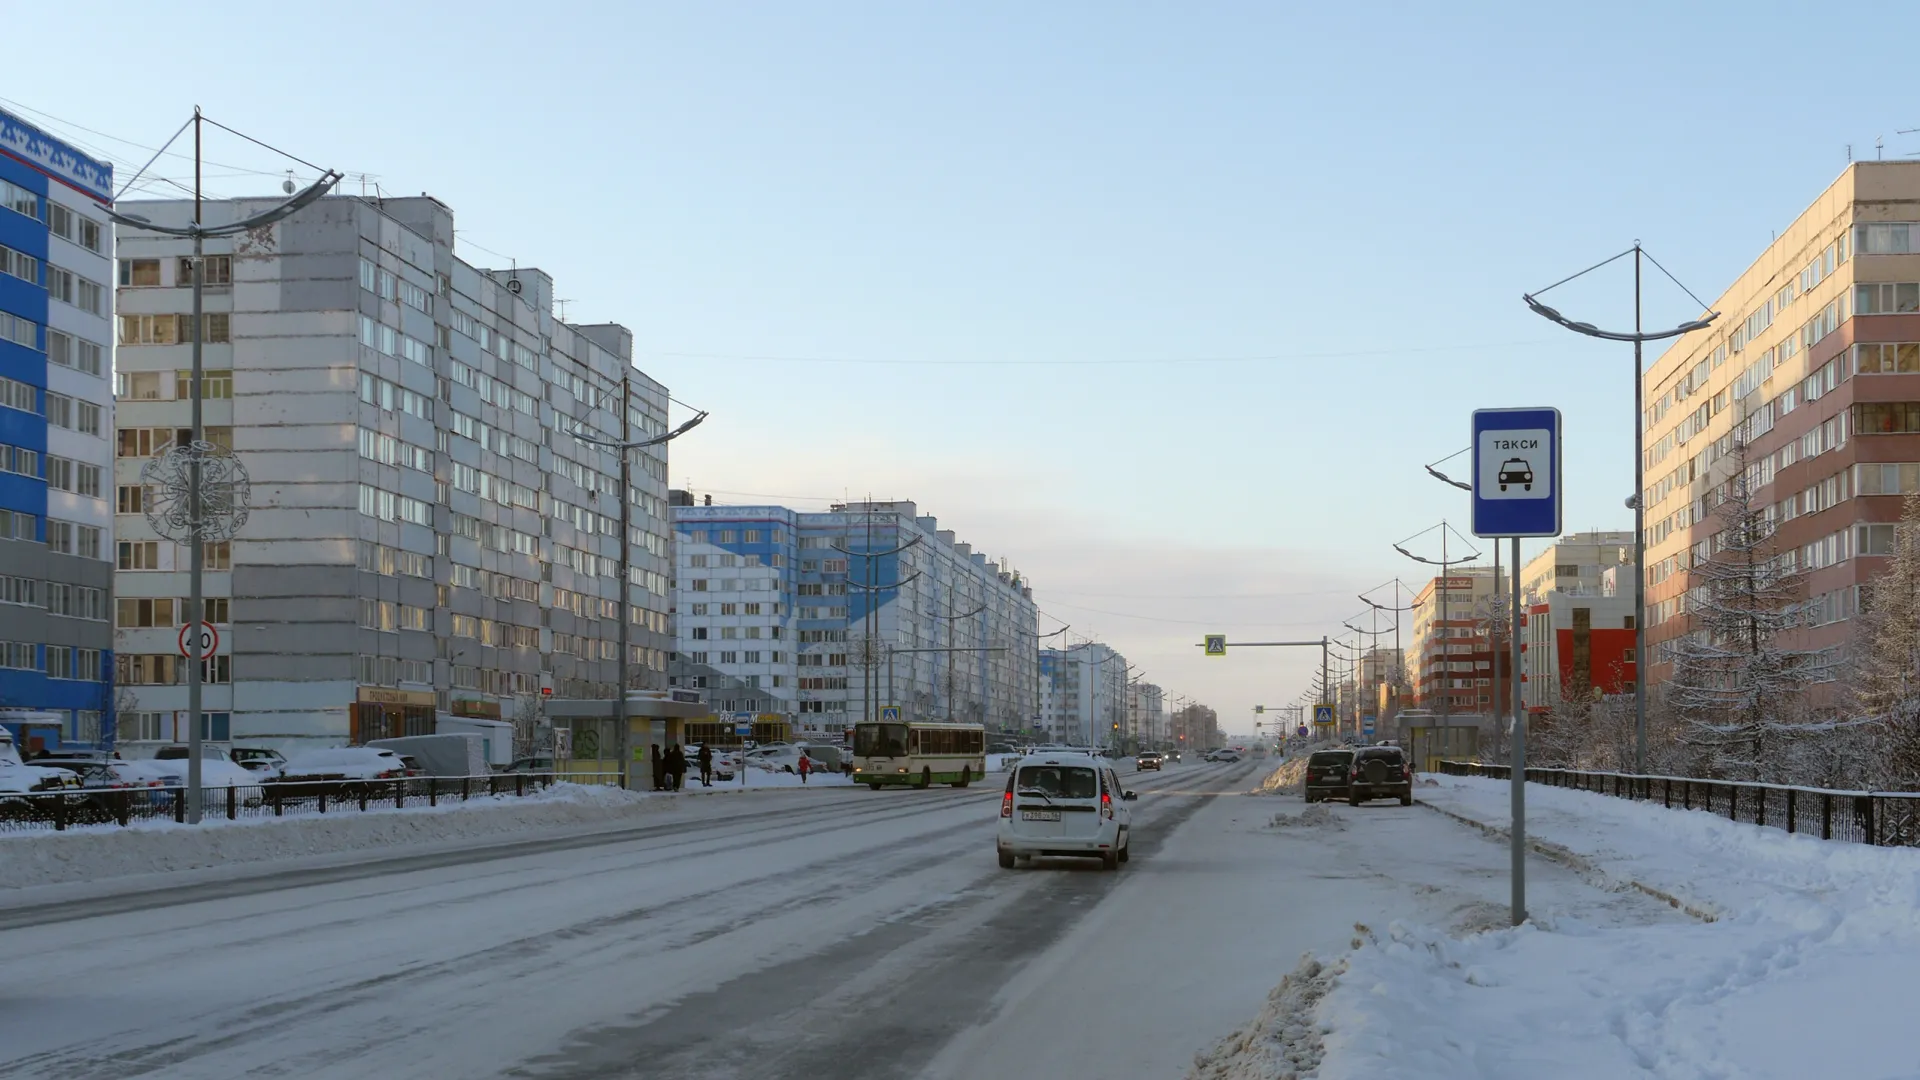 Многие улицы Нового Уренгоя преобразятся в 2024 году. Фото: Maksim Gulyachik / Shutterstock / Fotodom